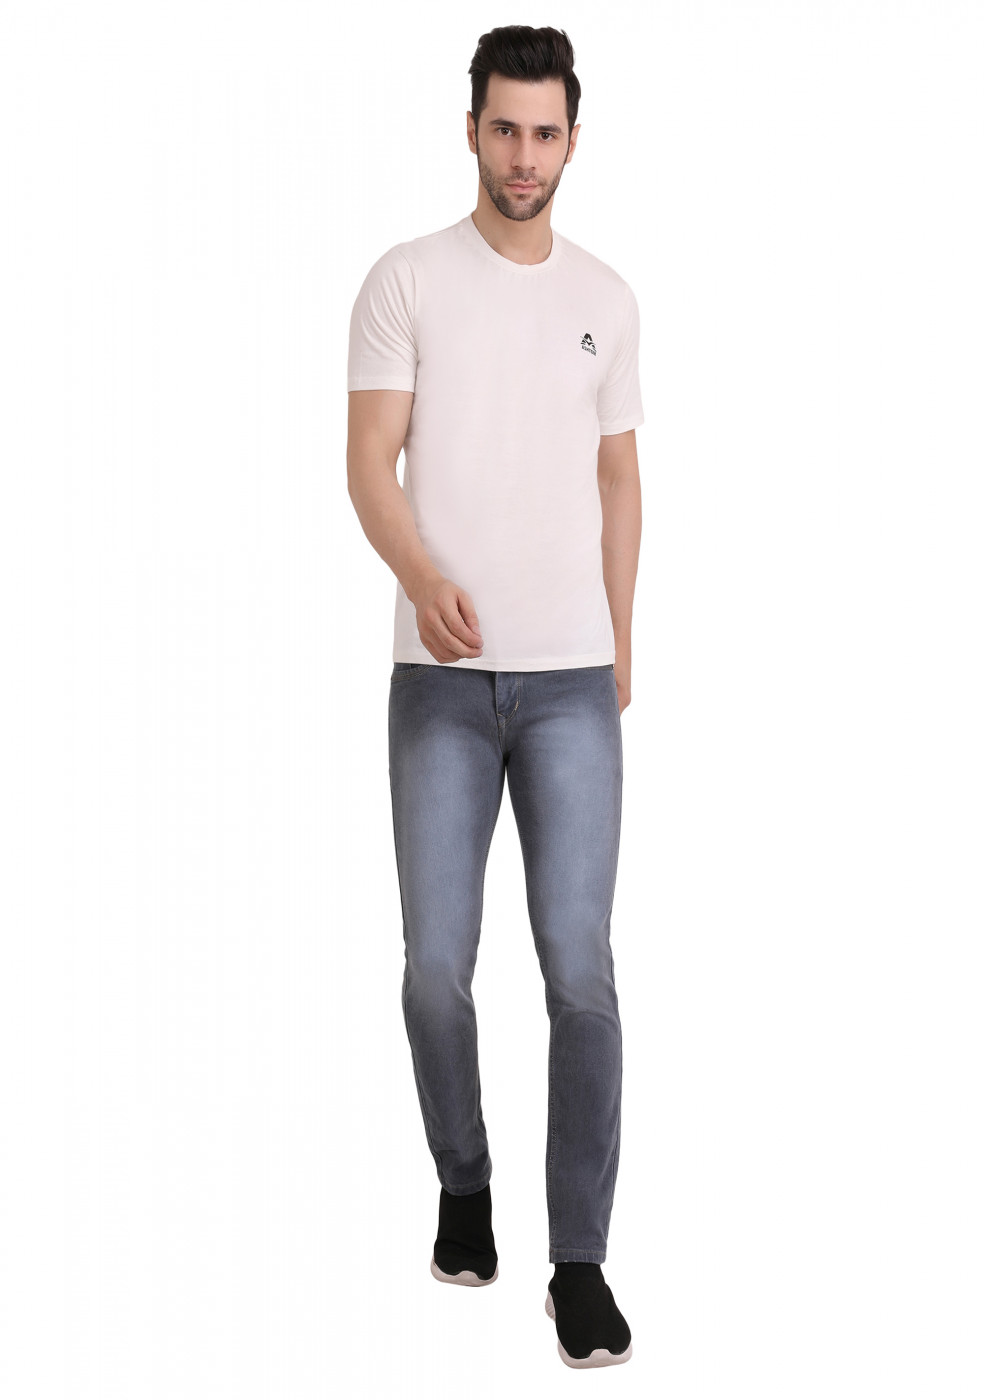 Gray Trendy Jeans For Men